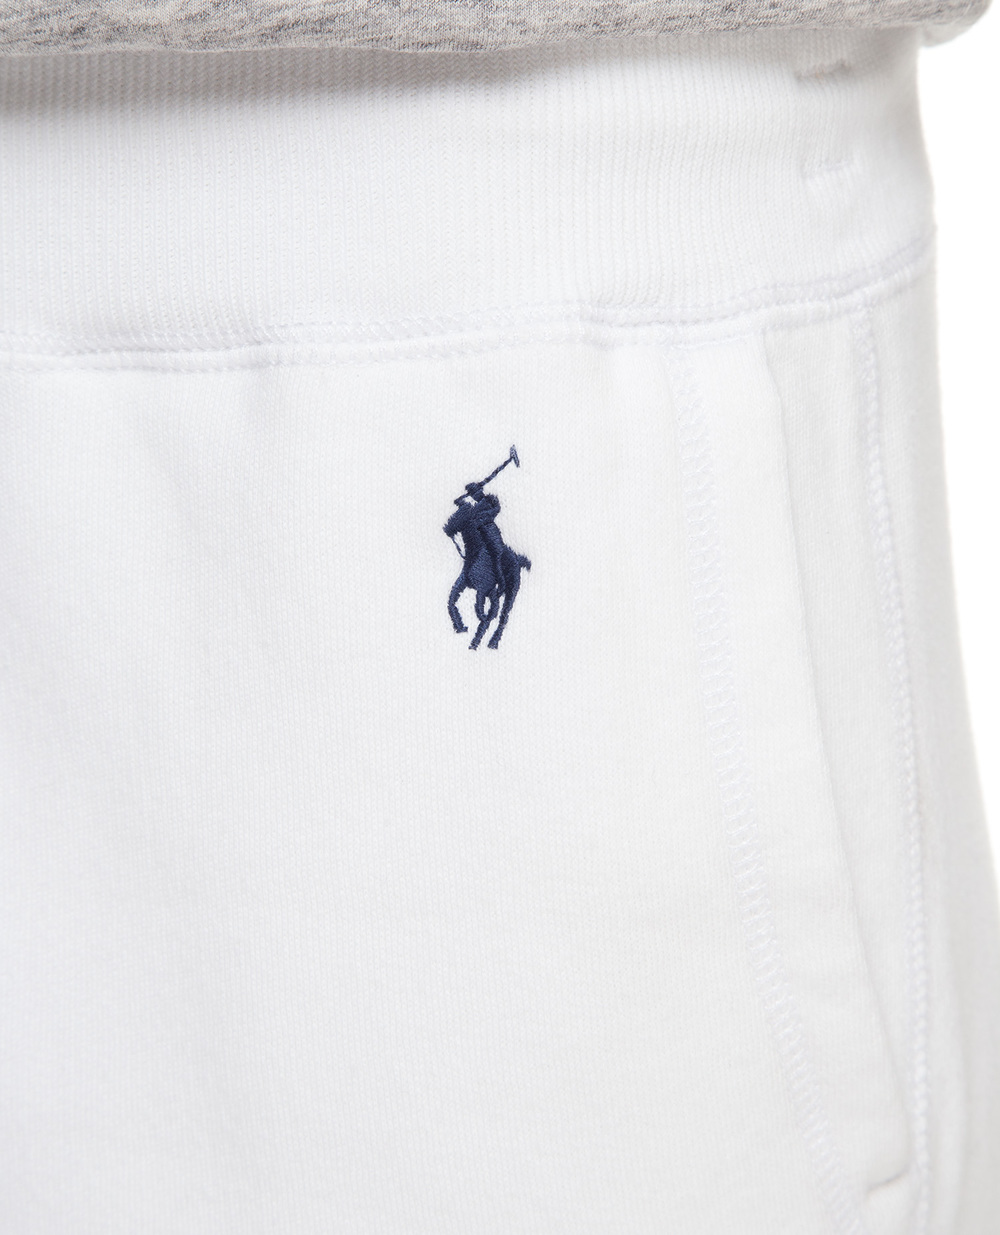 Спортивные брюки Polo Ralph Lauren 211704858009, белый цвет • Купить в интернет-магазине Kameron